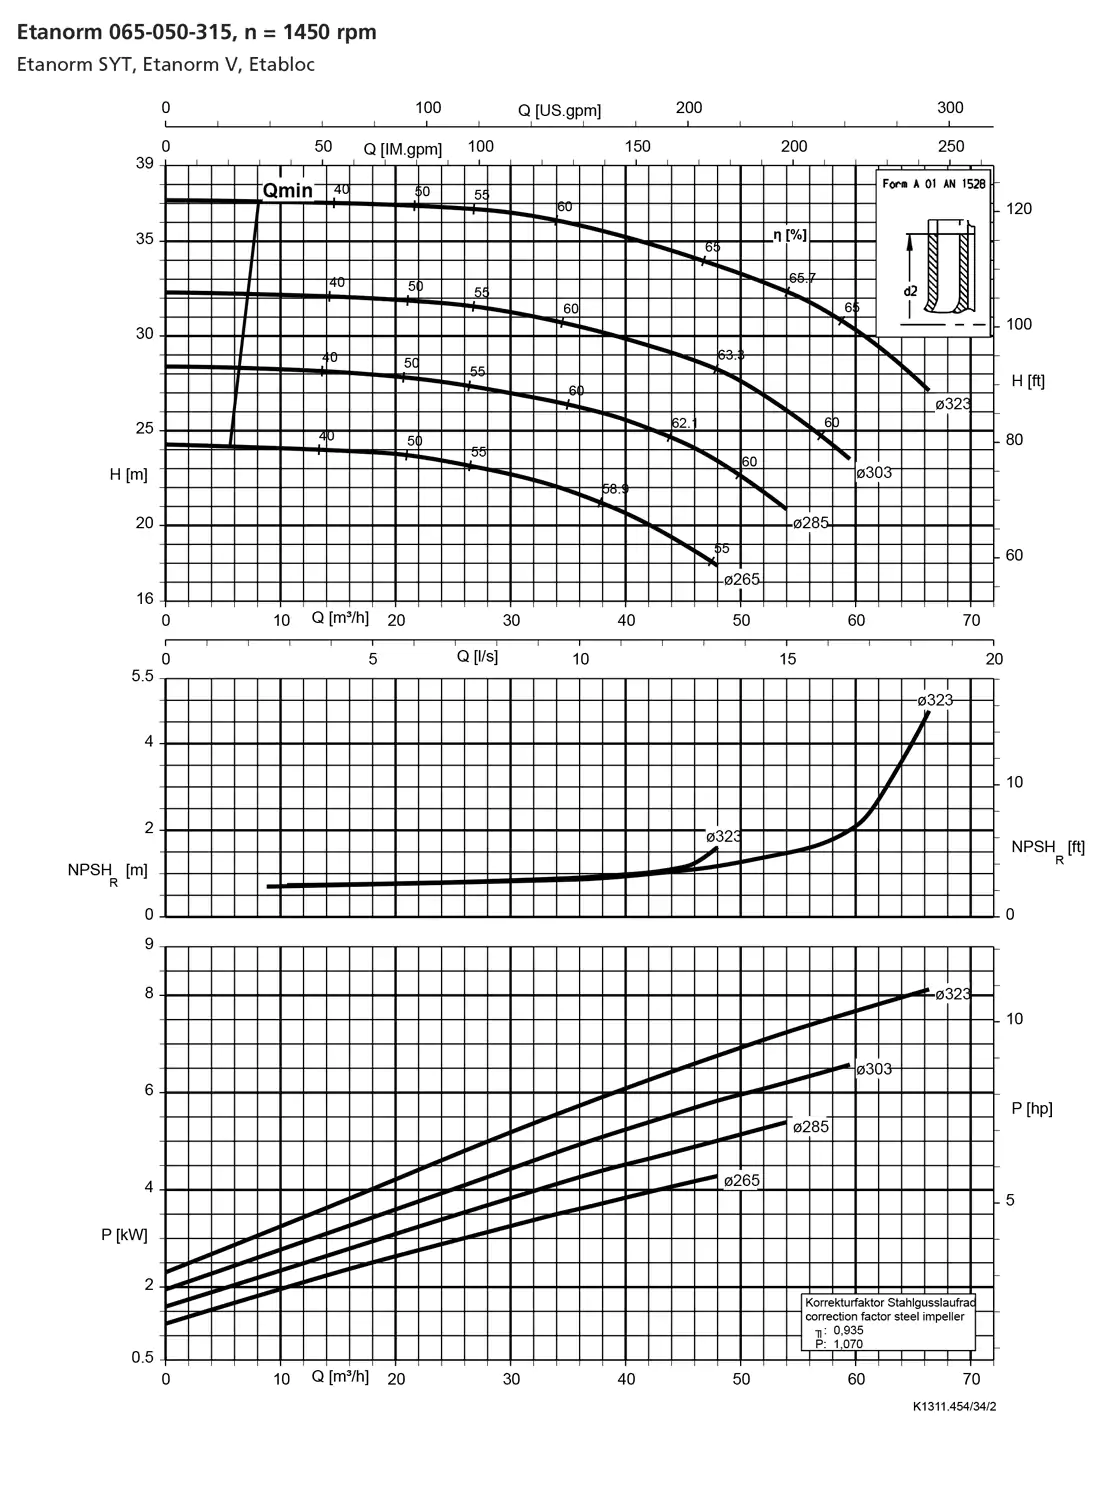 نمودار-کارکرد-پمپ-etanorm-syt-65-050-315-1450